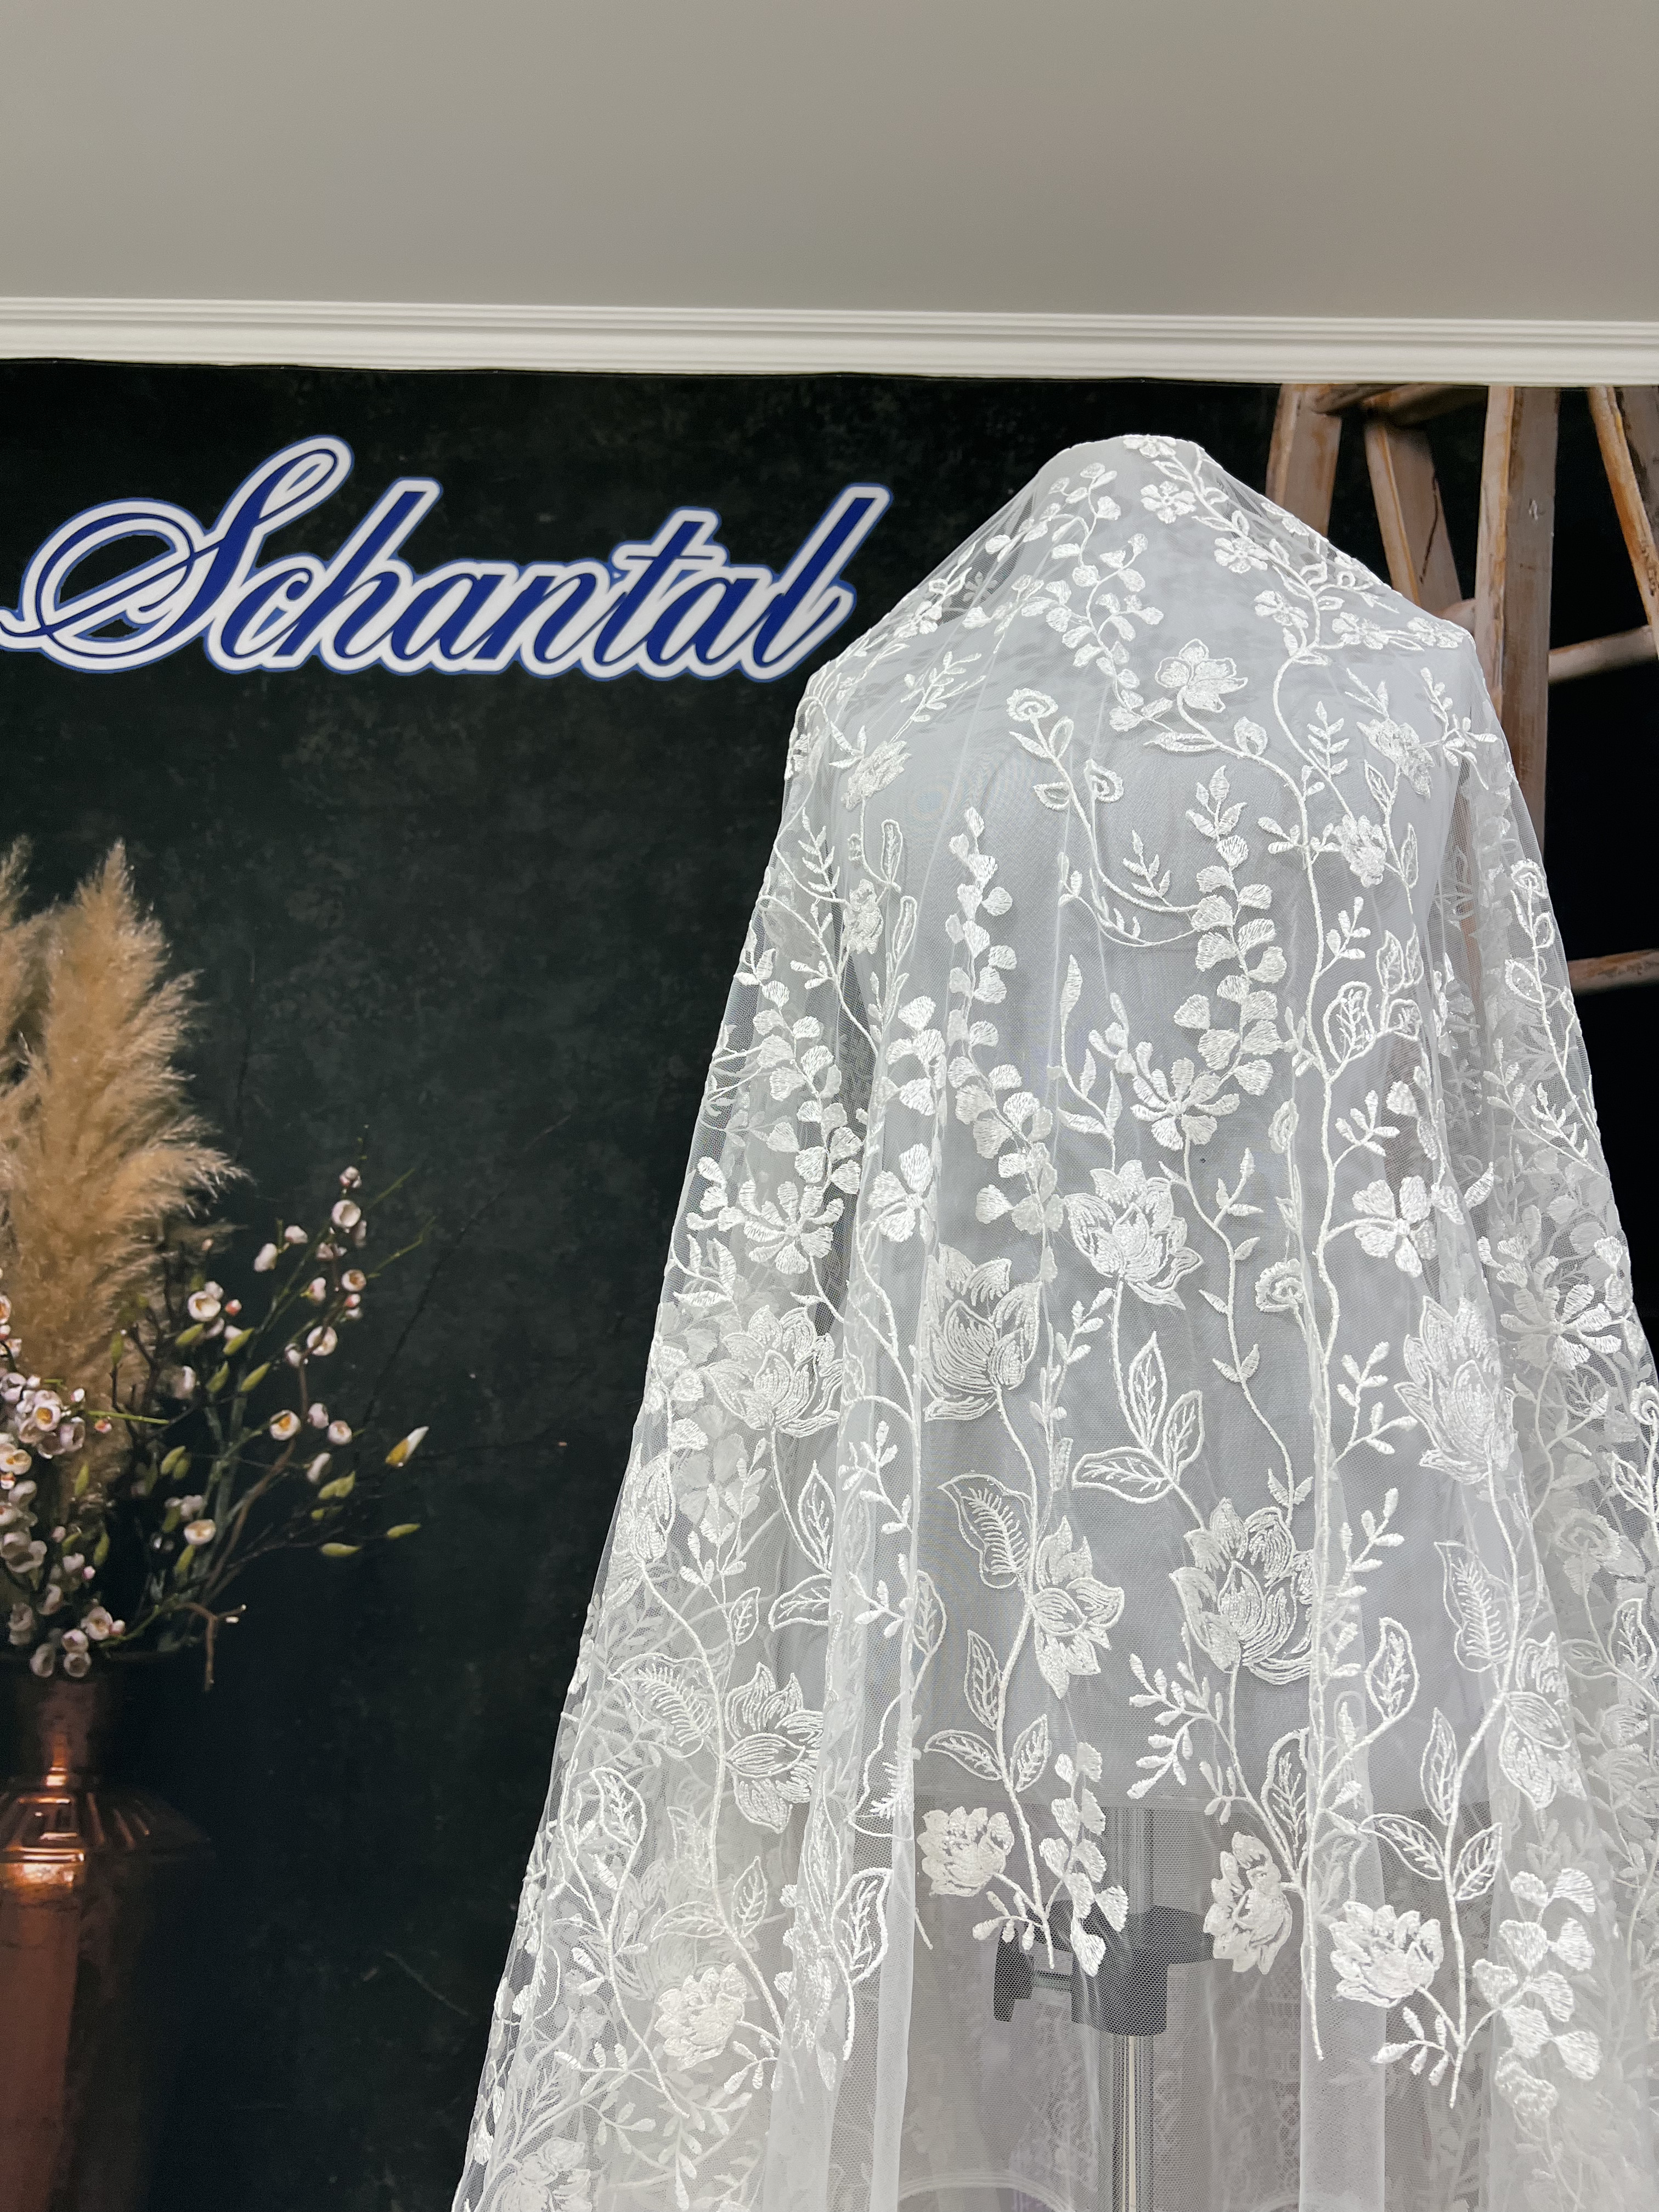 Schantal Brautkleid aus der Kollektion „Schatz“, Modell A - 64 iv. Foto 7